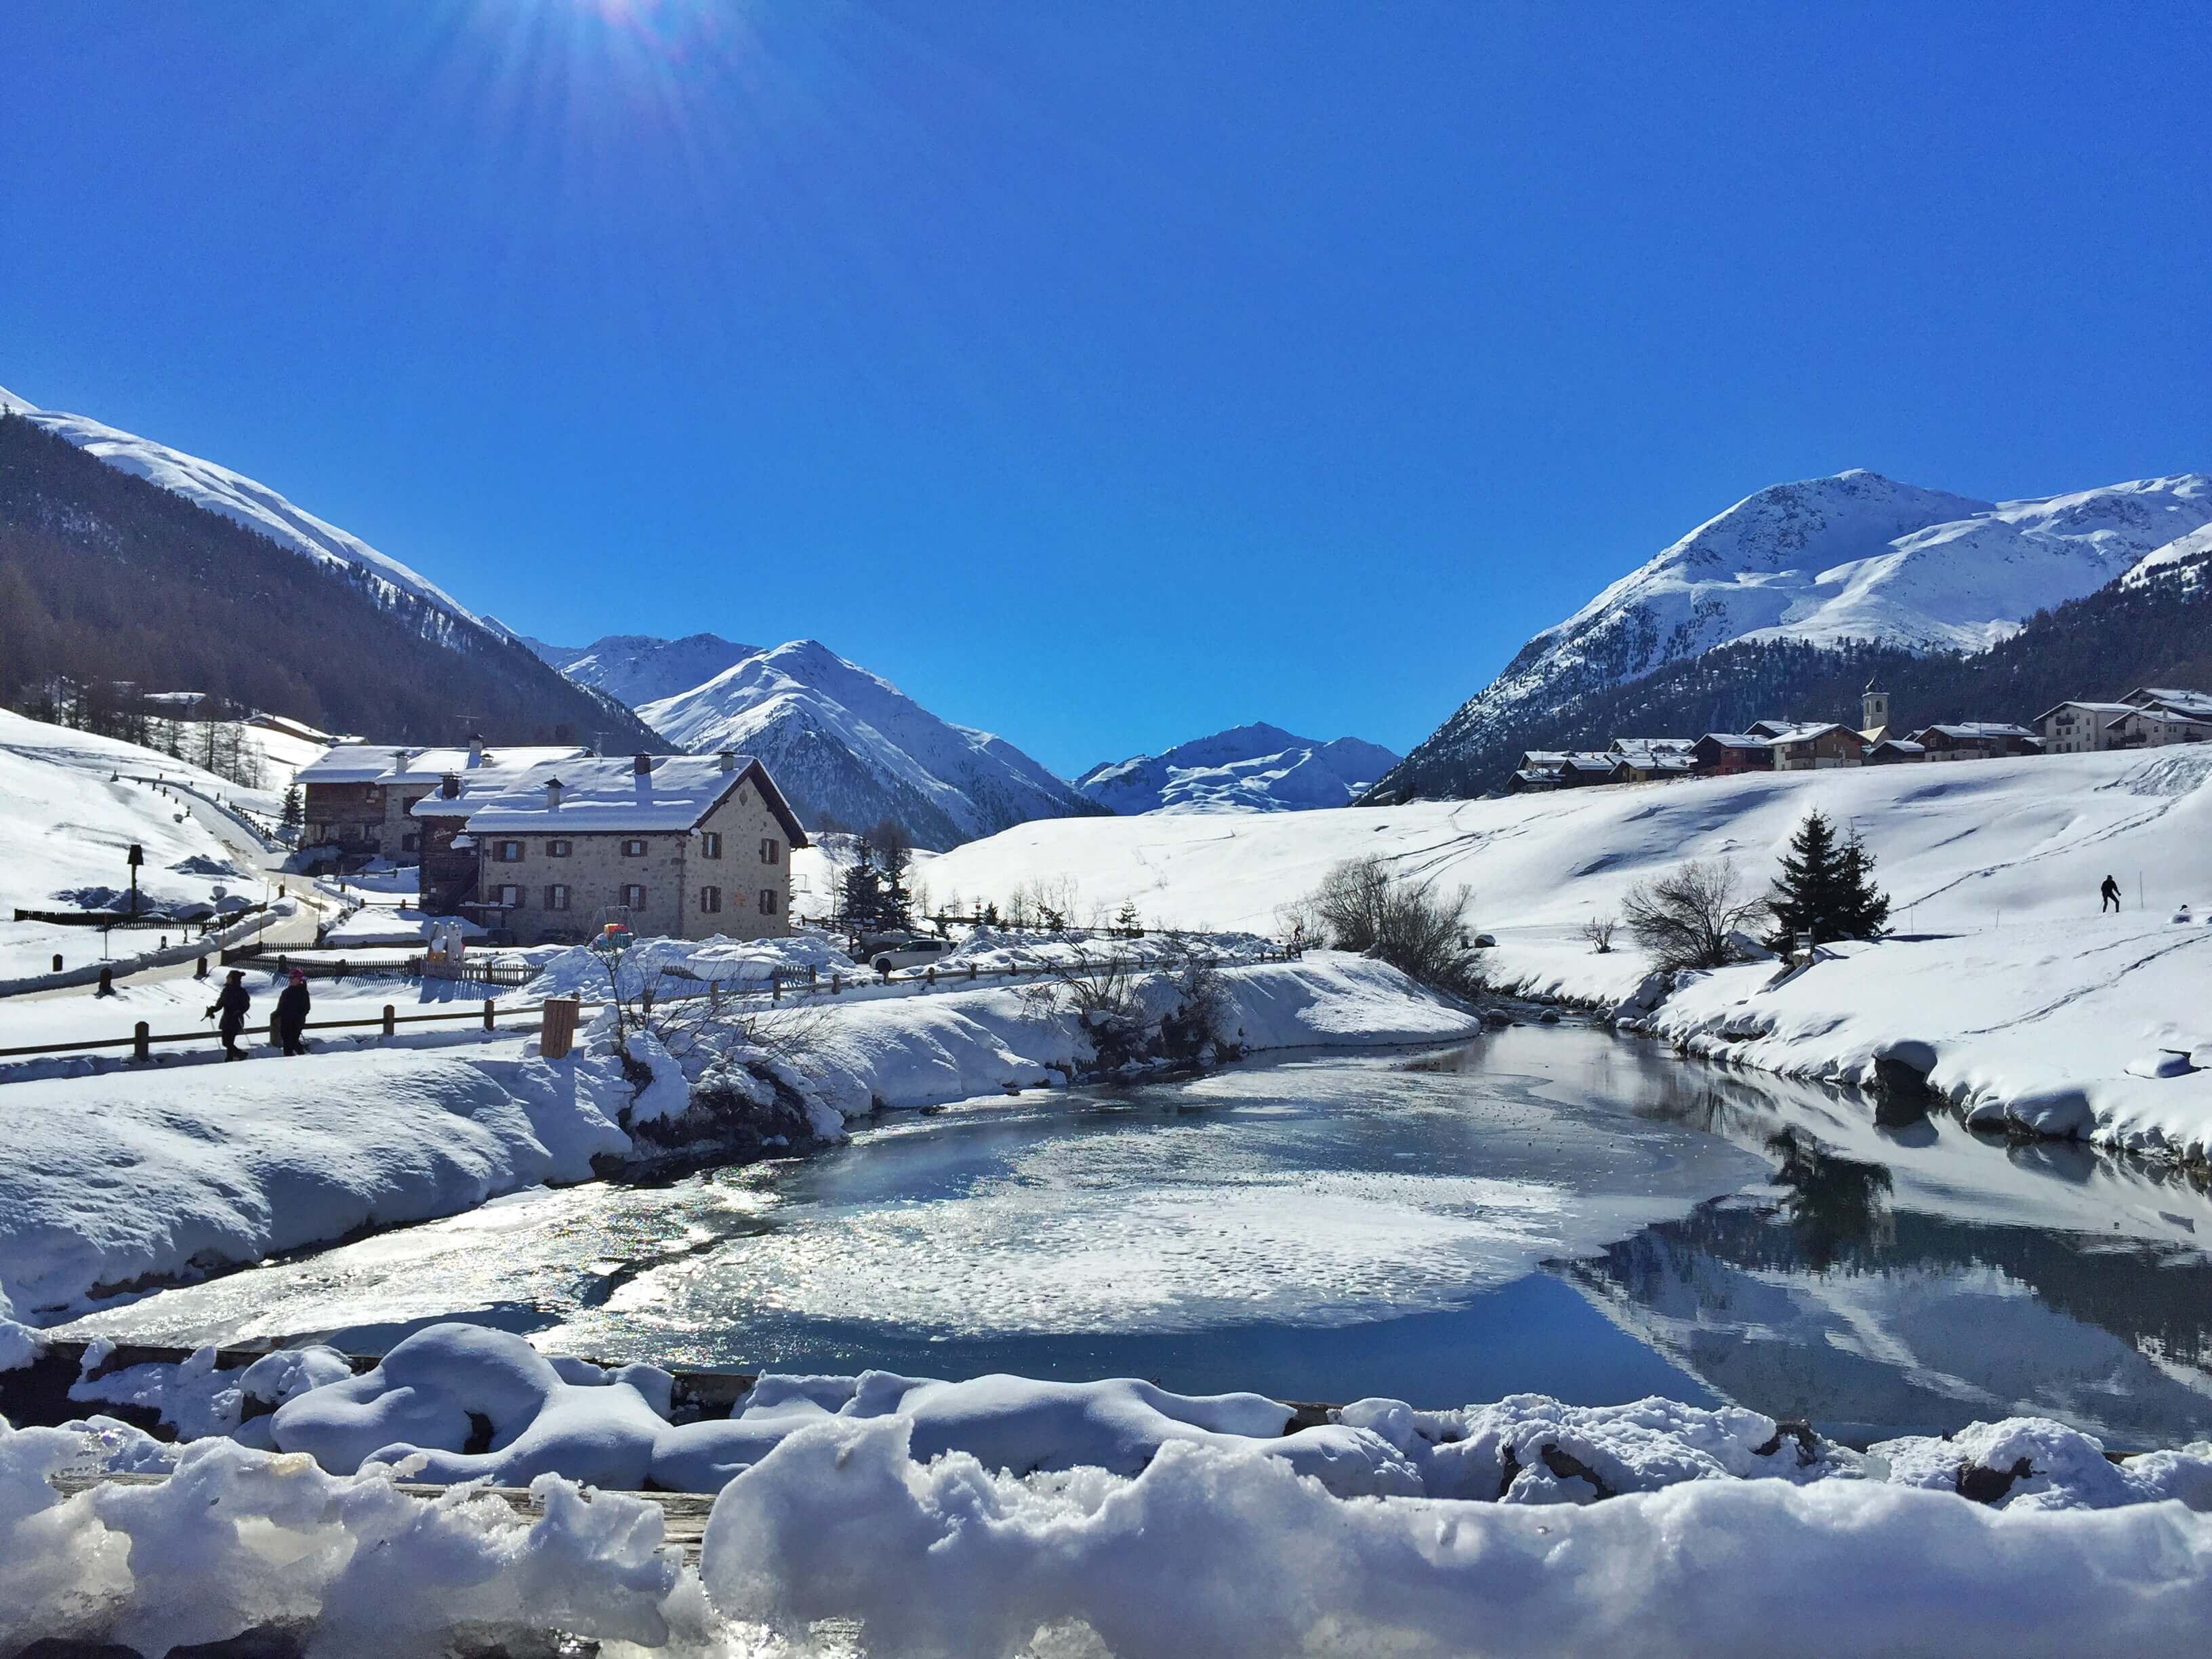 Winter activities in Livigno